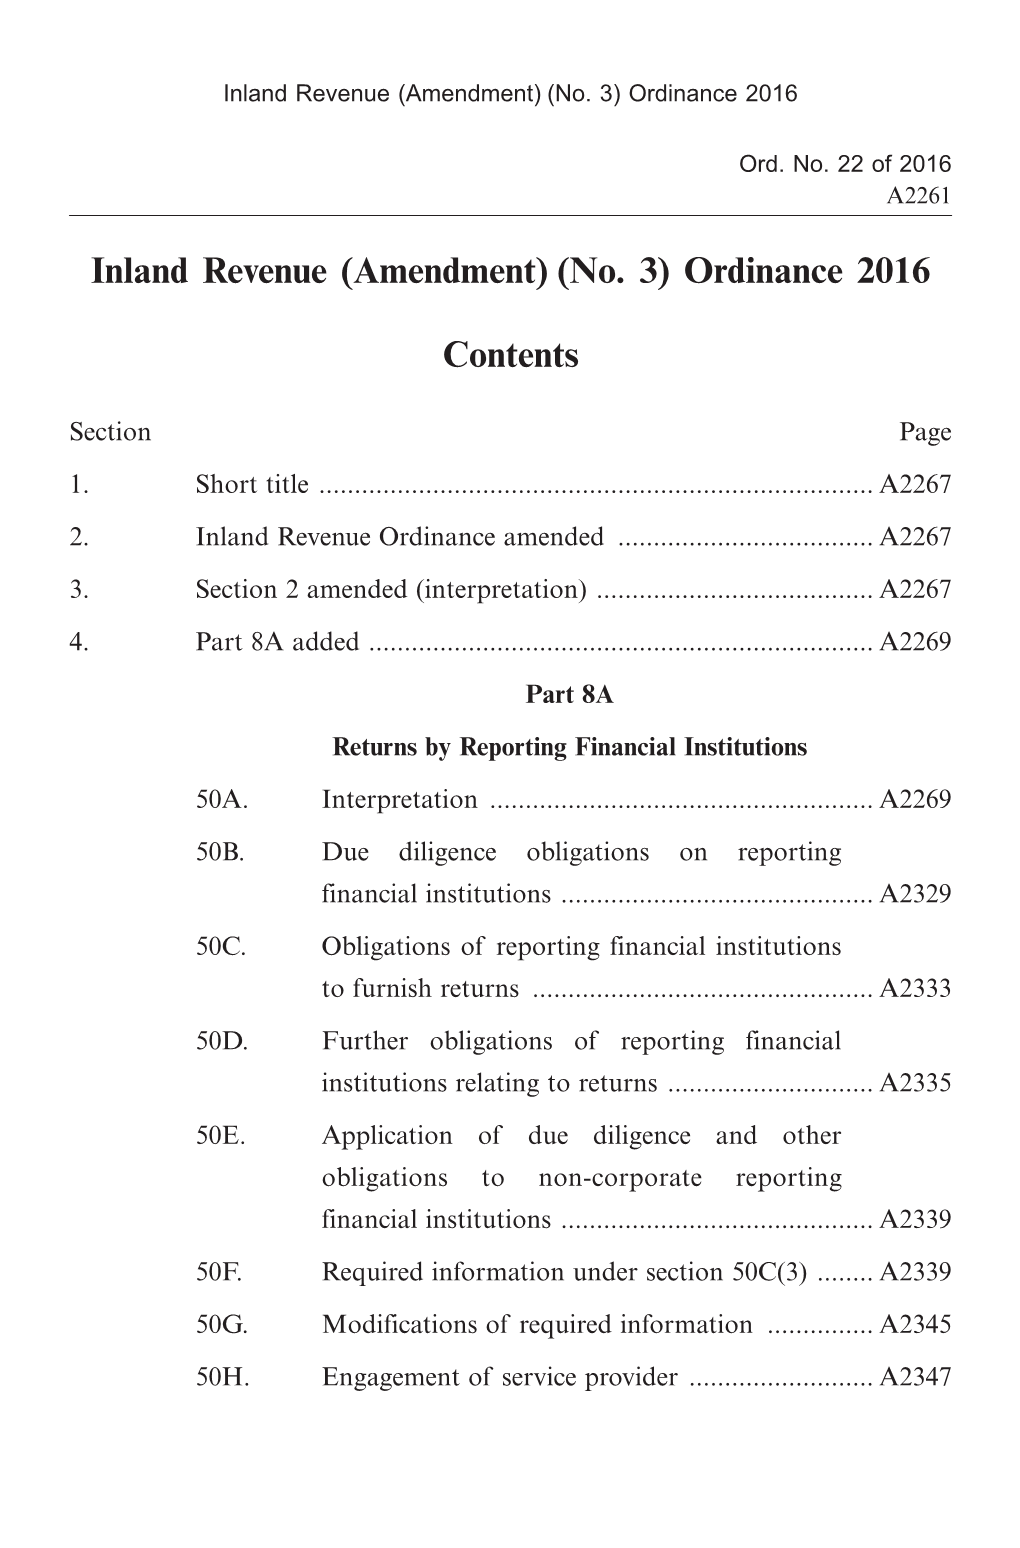 Inland Revenue (Amendment) (No. 3) Ordinance 2016 Contents